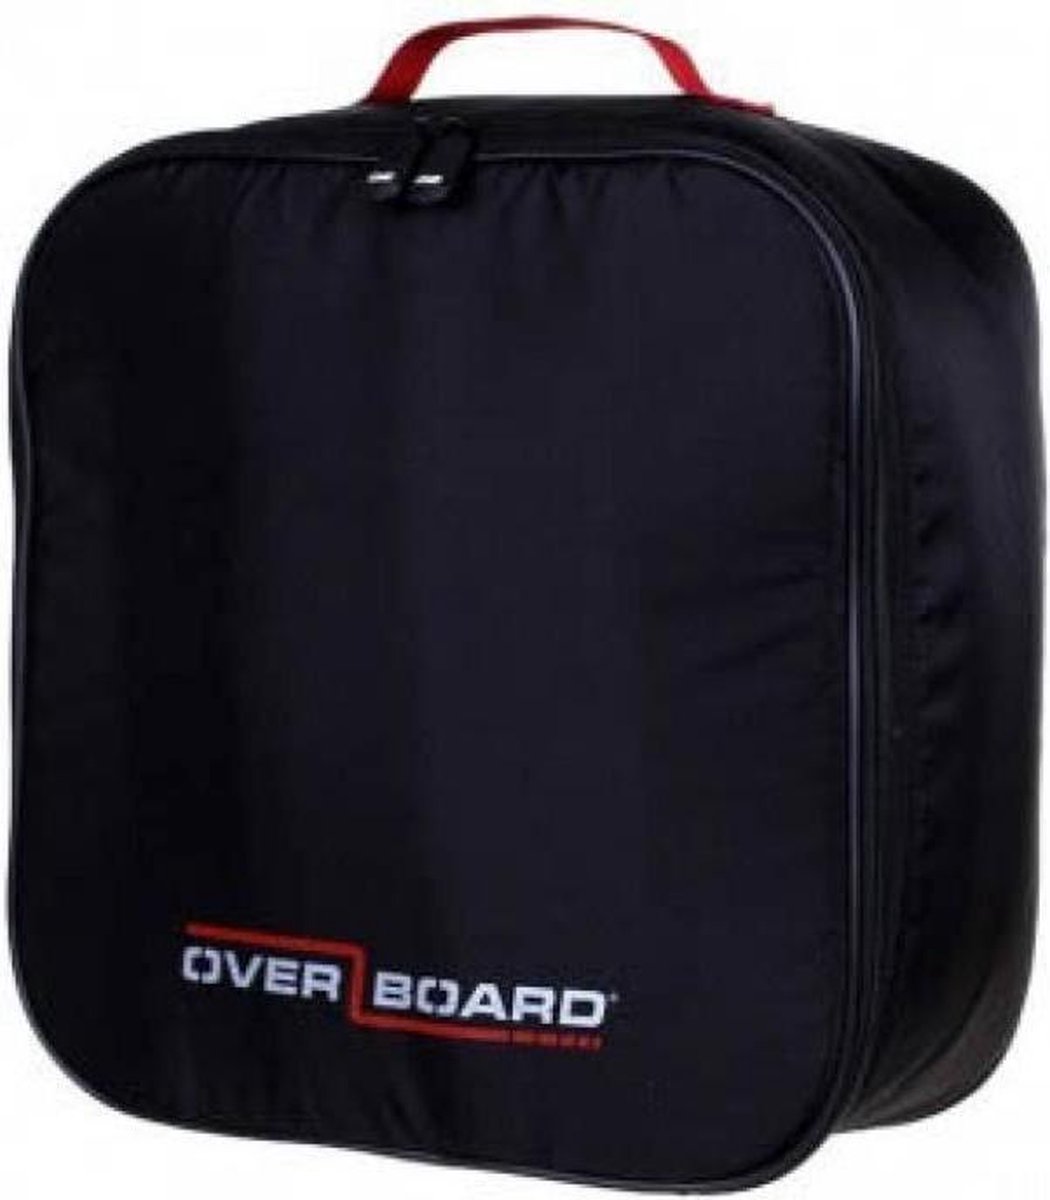 Overboard - Camera Accessoires Bag - Black